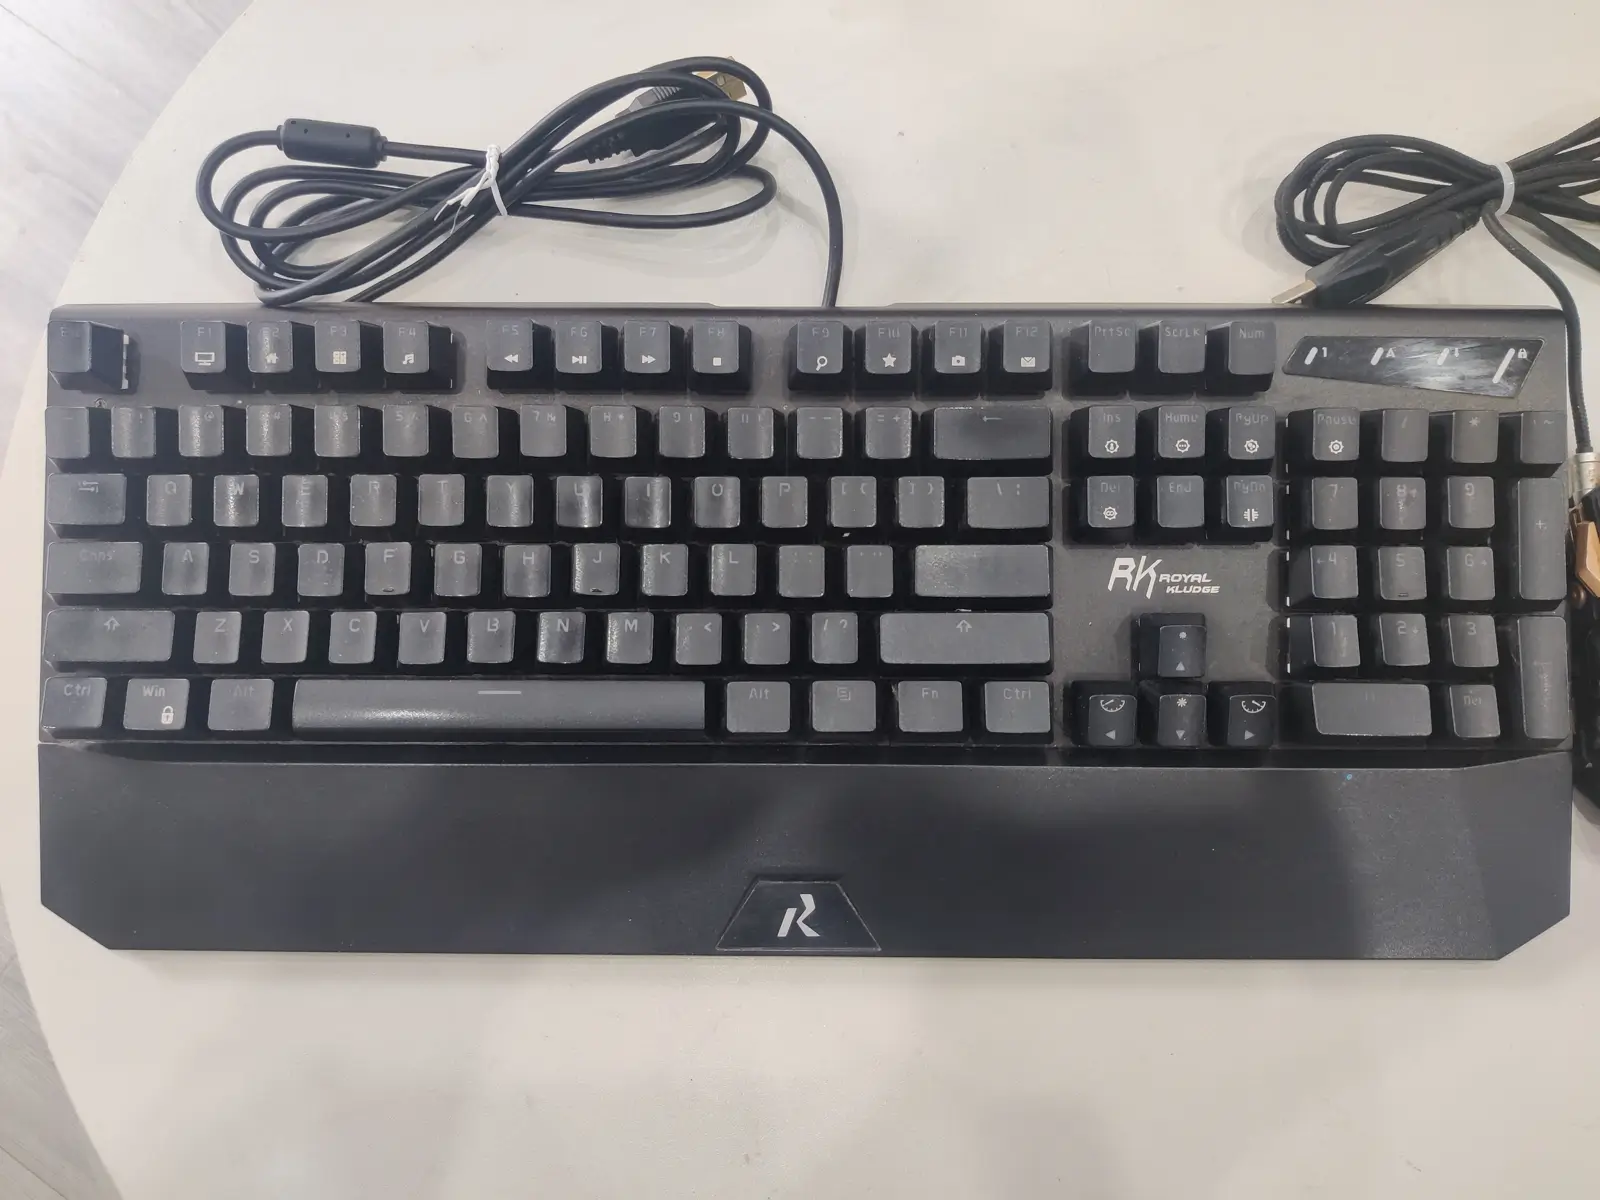 灵耀幻彩背光式104键机械键盘 黑色RGB青轴游戏机械键盘鼠标套装